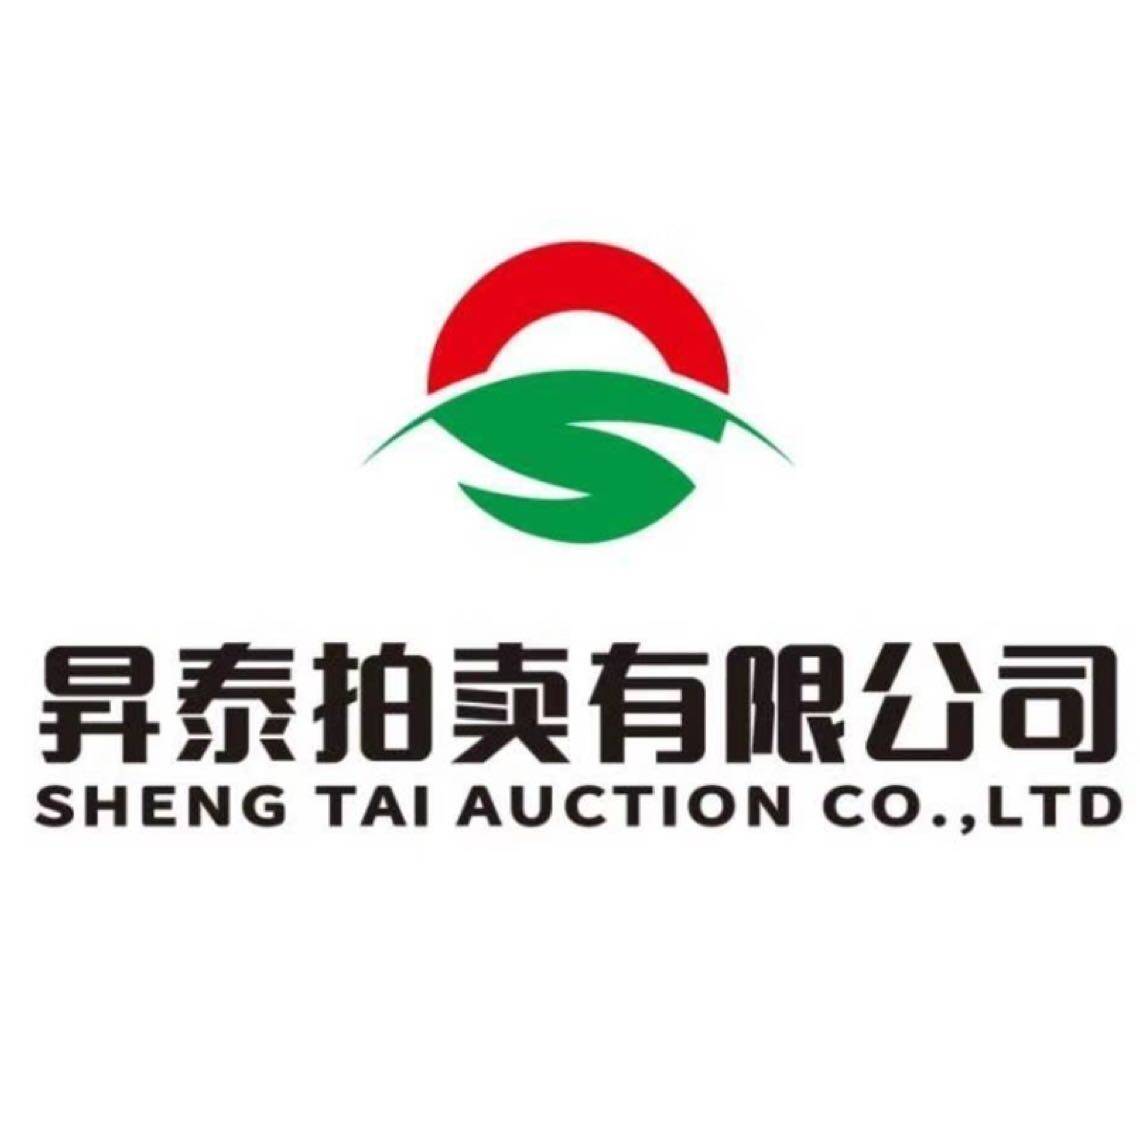 昇泰拍卖招聘logo